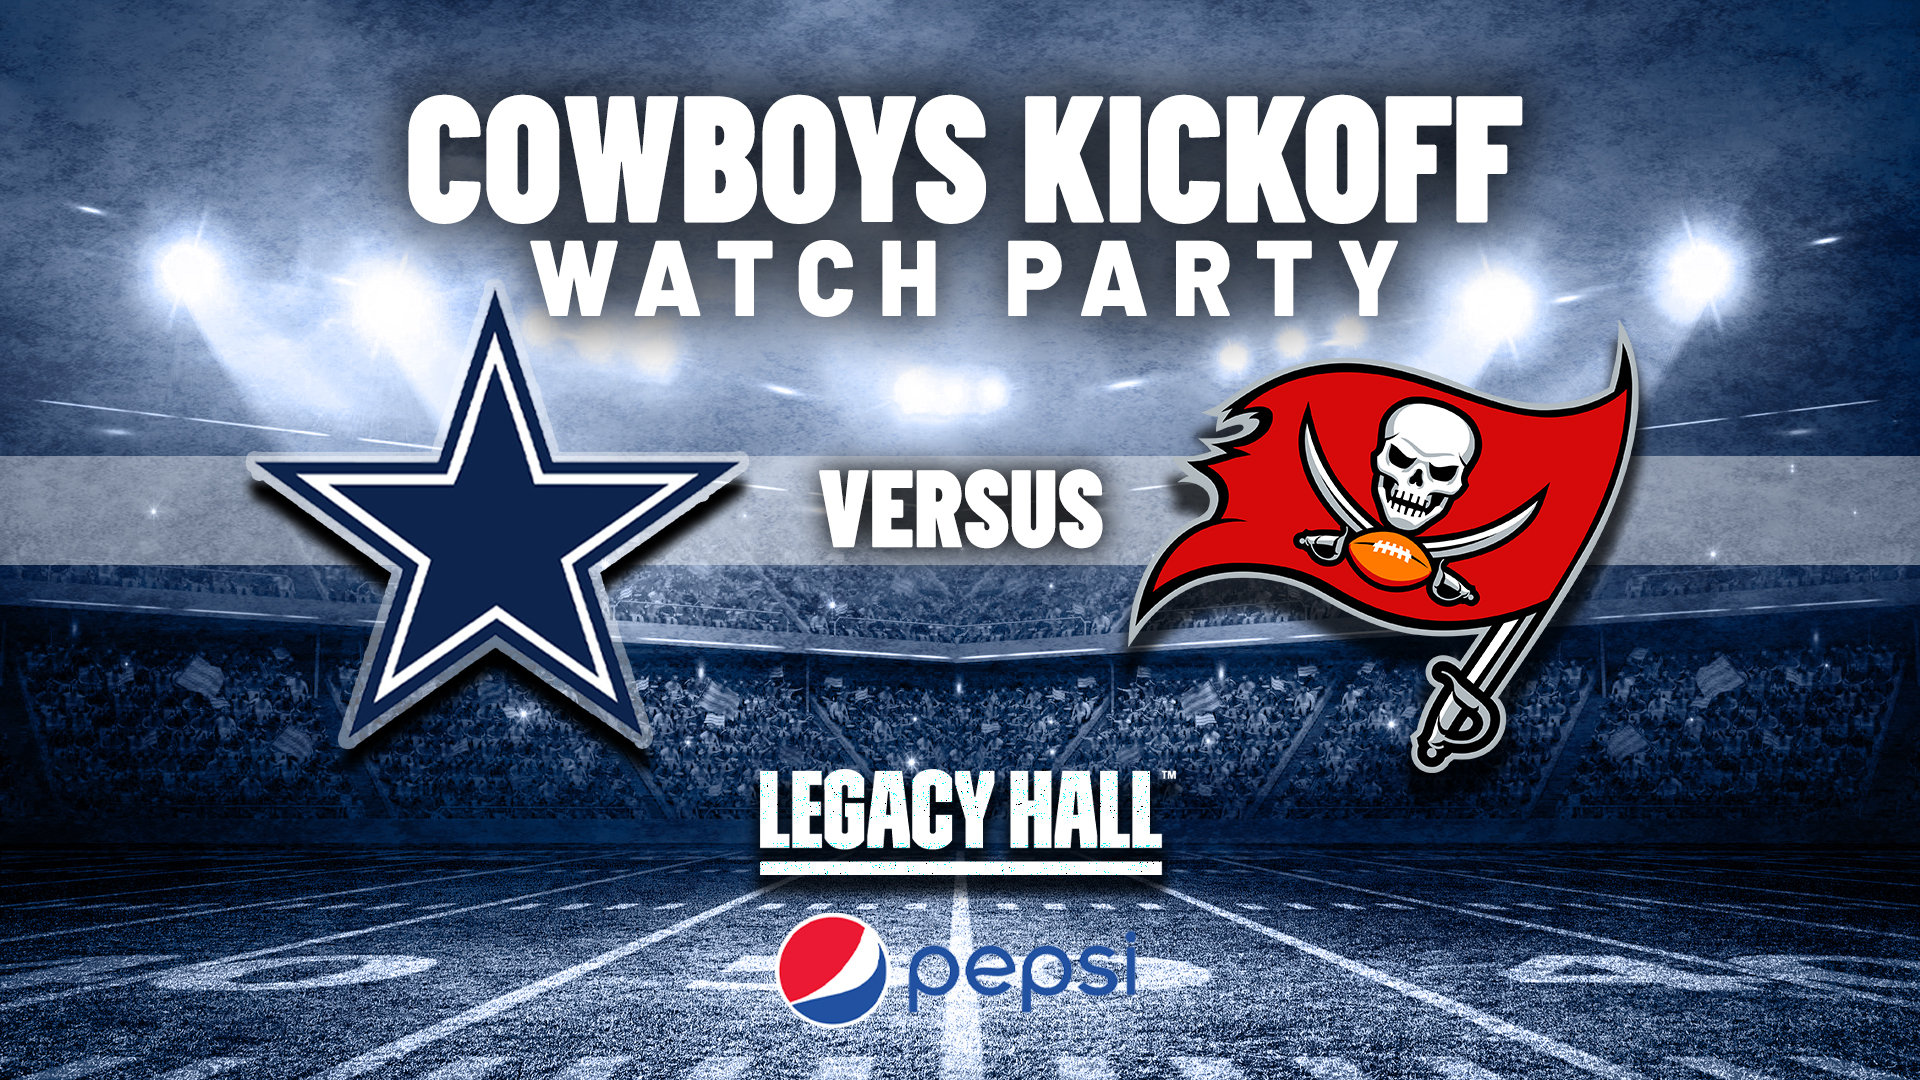 Cowboys Kickoff Watch Party